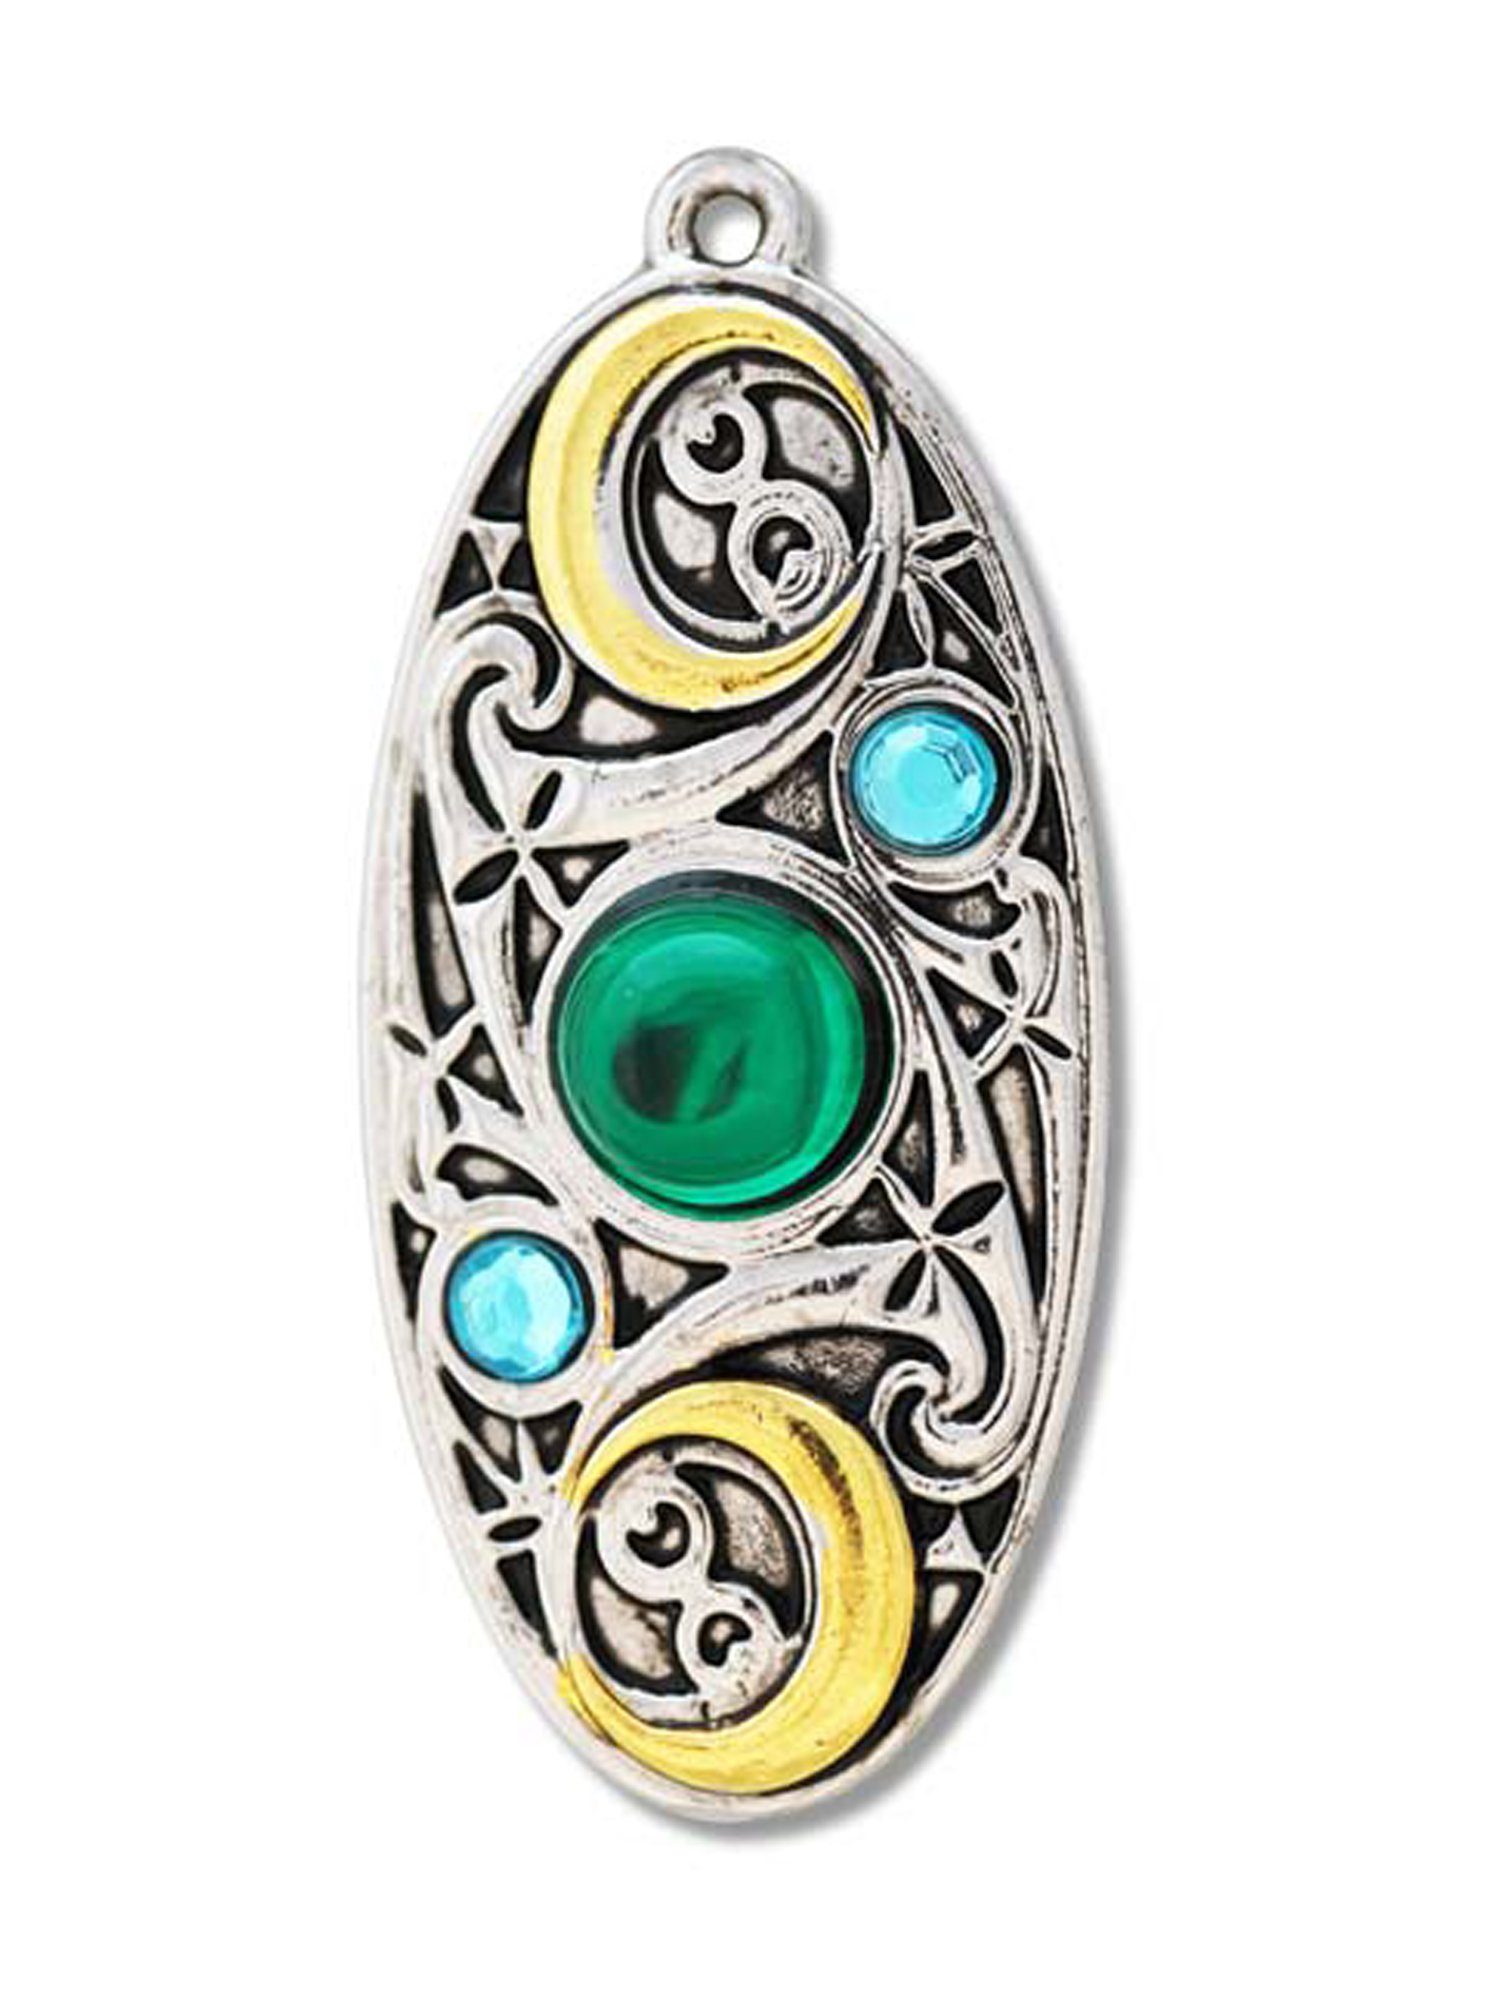 Damen Schmuck Adelia´s Amulett Mythische Kelten Talisman, Mond Schild - Für Klarheit und Besinnung